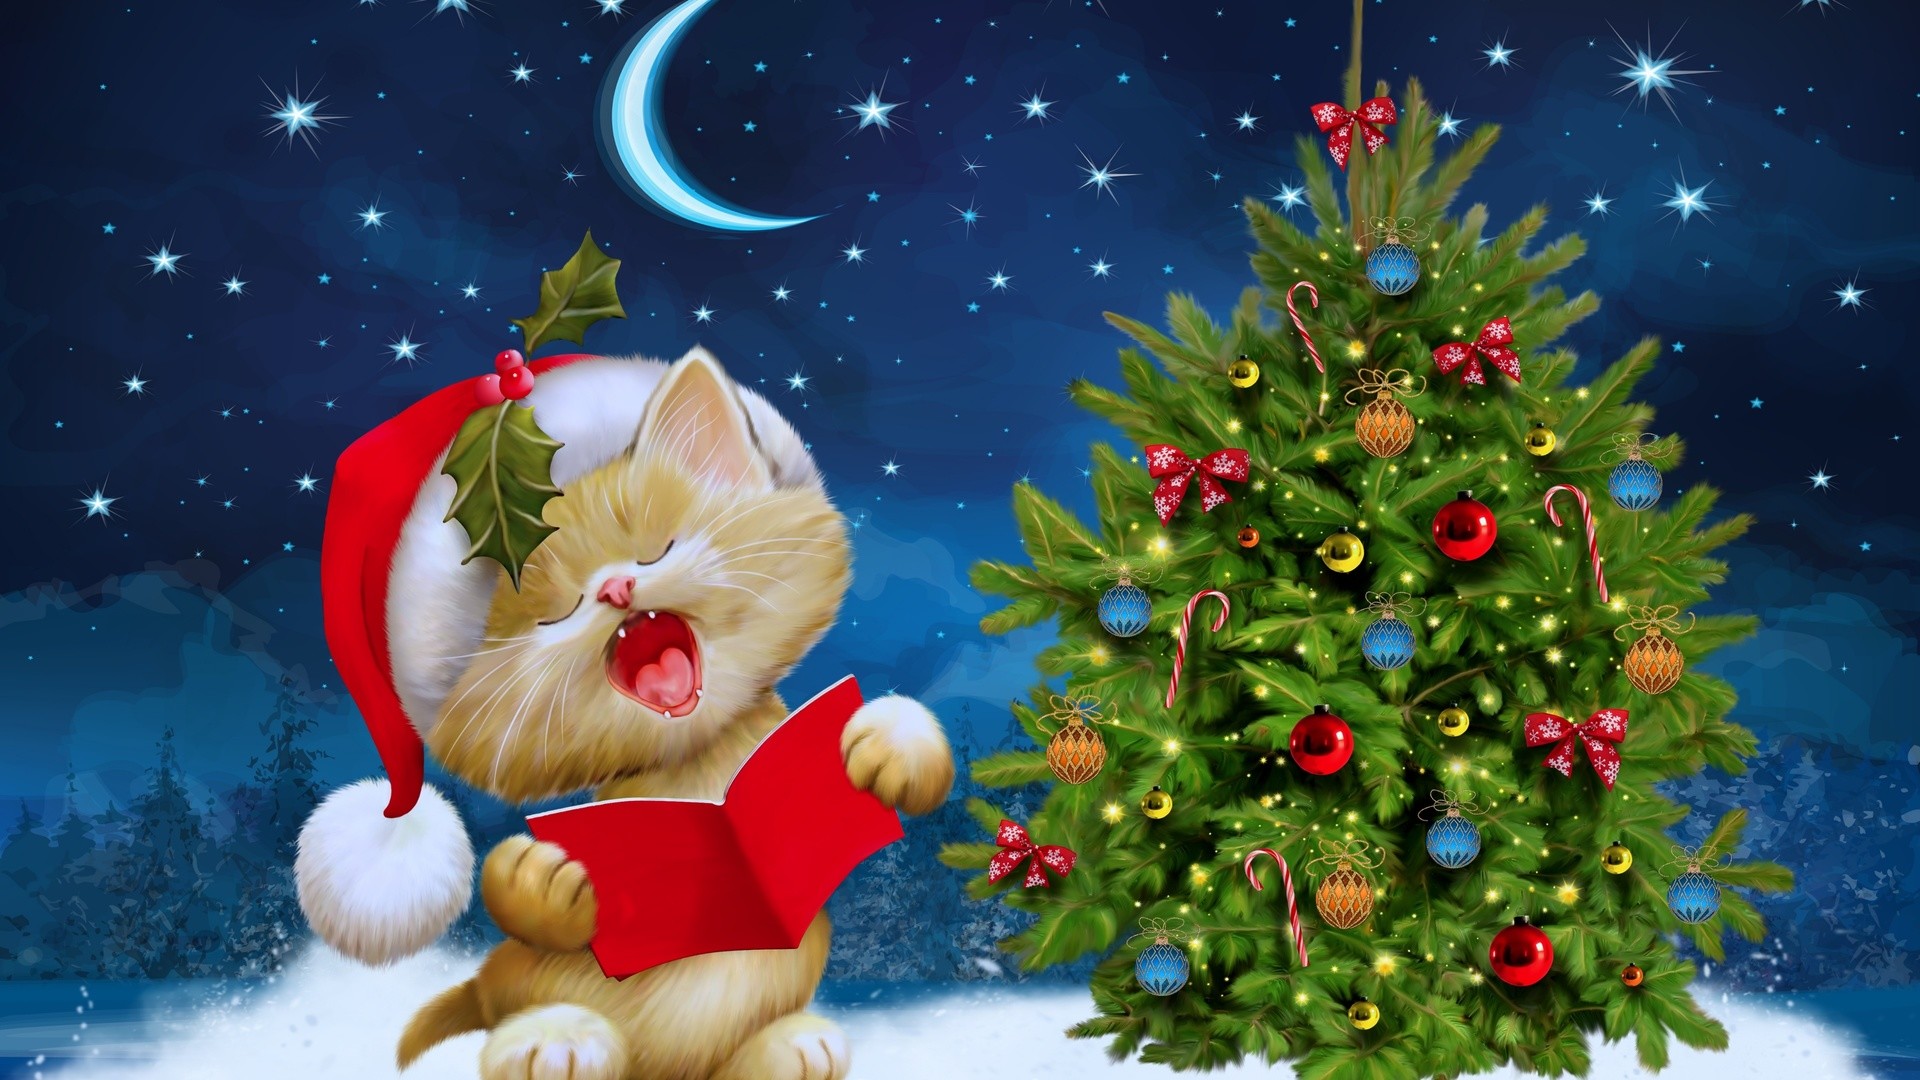 santa claus fondos de pantalla hd 1080p,árbol de navidad,navidad,nochebuena,decoración navideña,decoración navideña